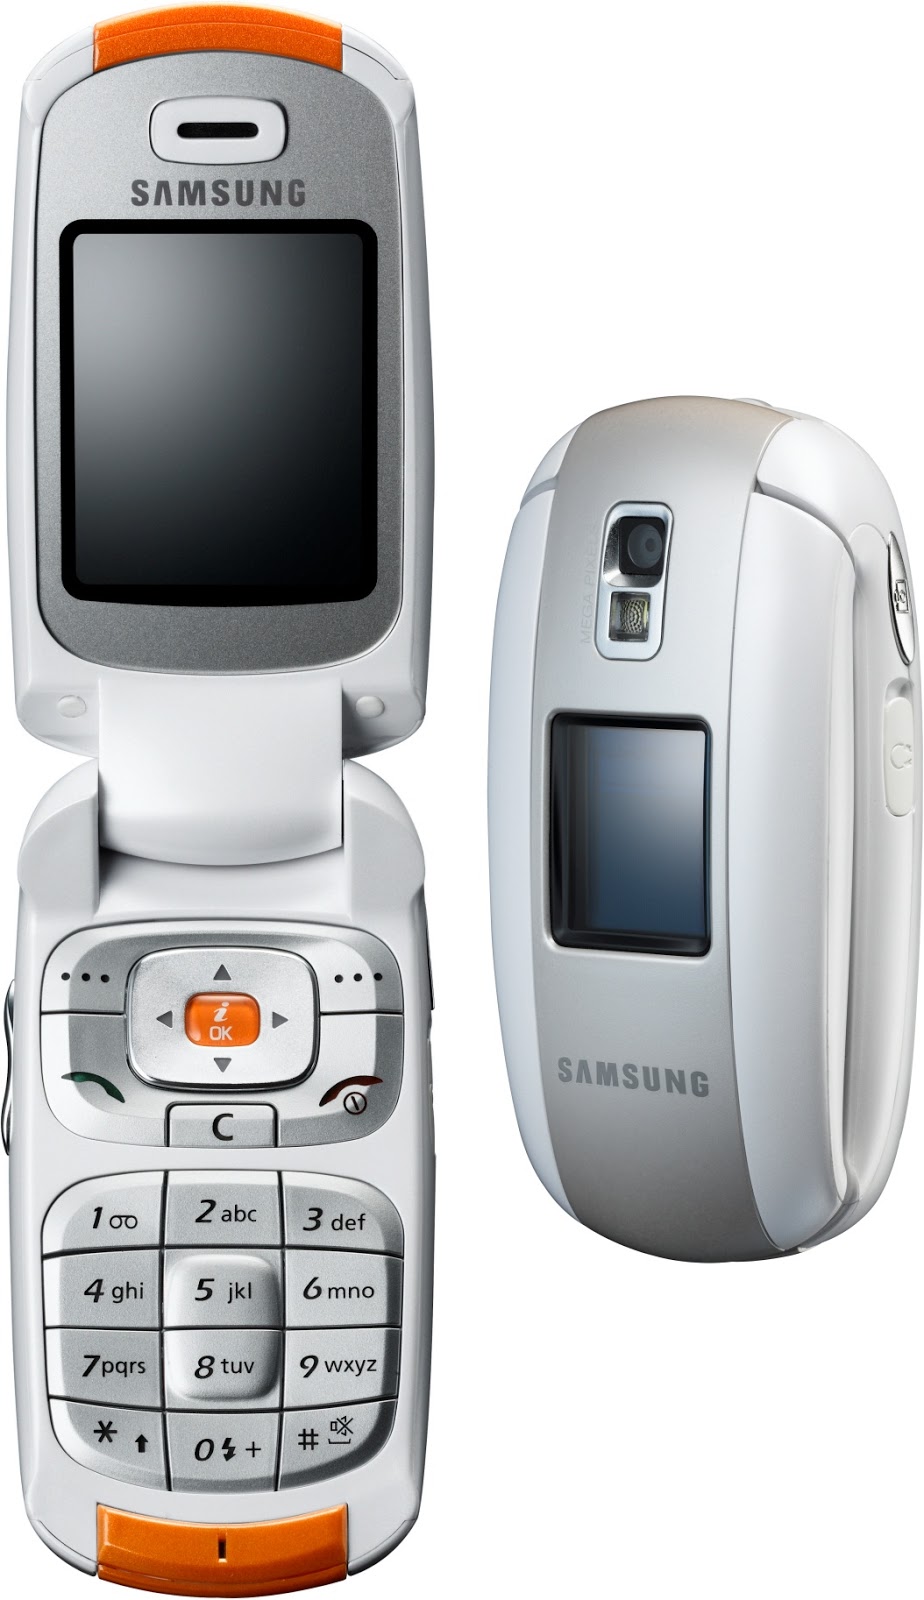 Retromobe Retro Mobile Phones And Other Gadgets Nokia 6111 Vs Samsung E530 05